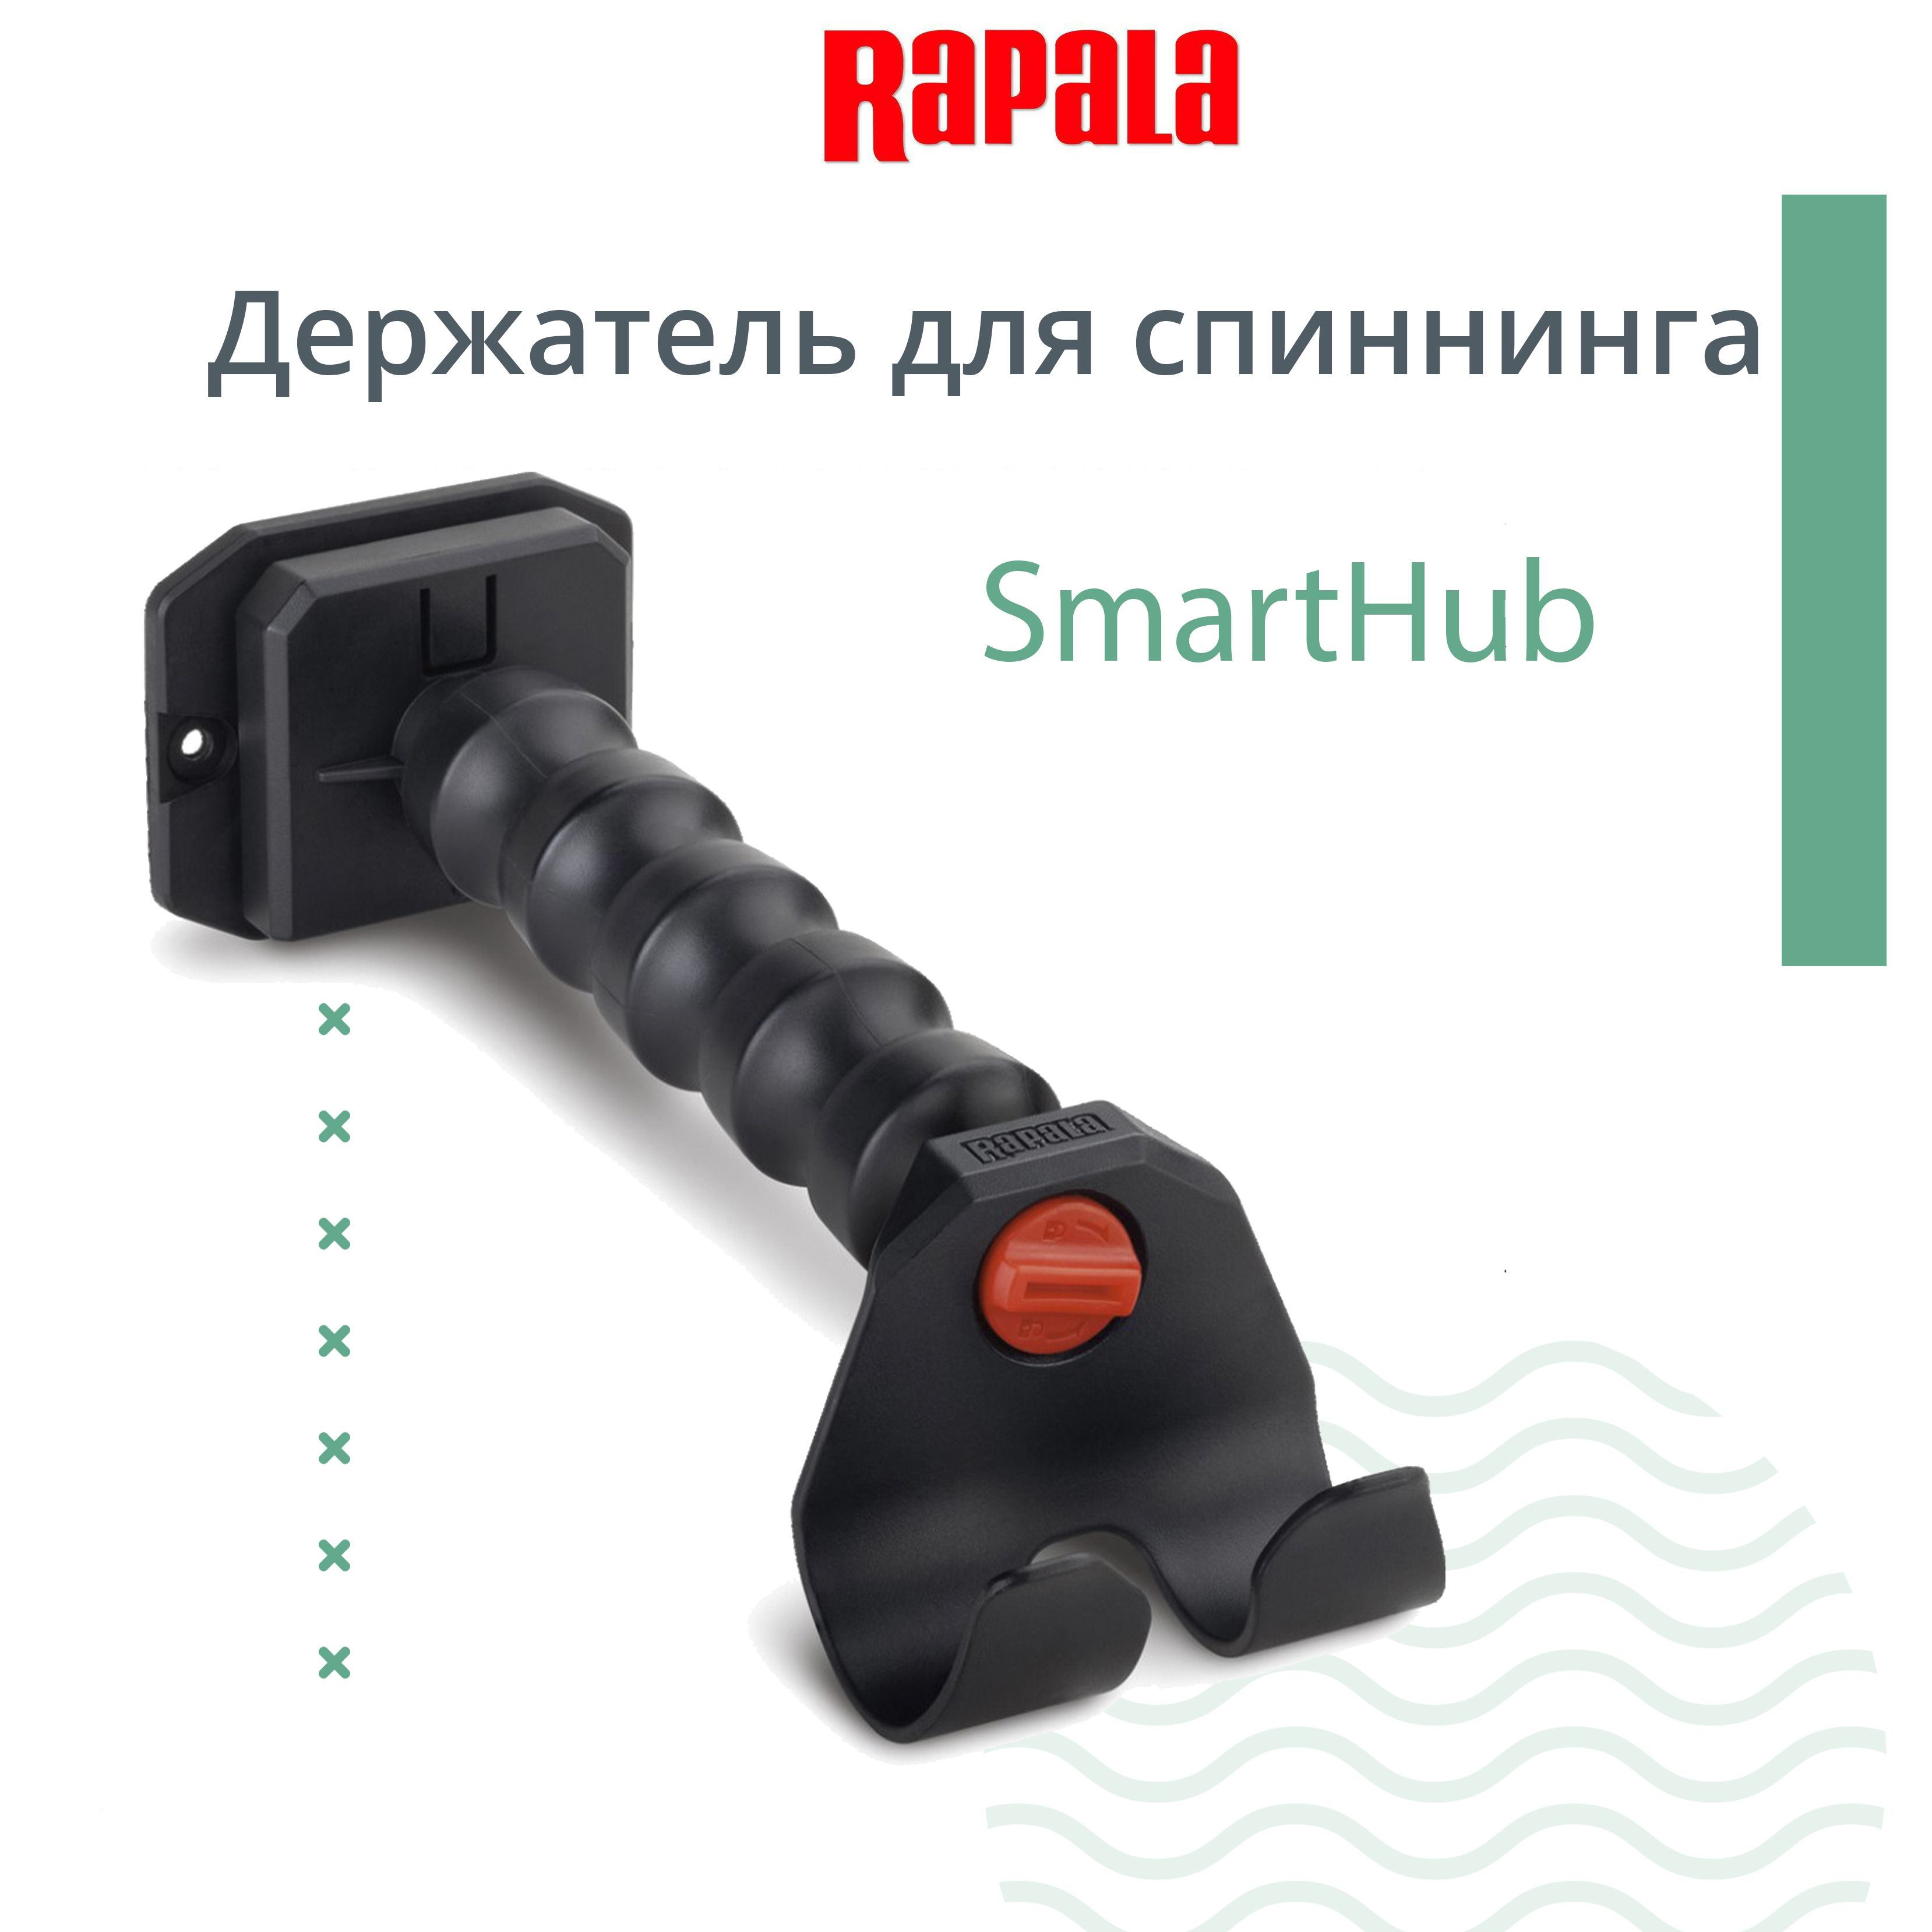 Держатель для спиннинга RAPALA SmartHub - купить по выгодной цене